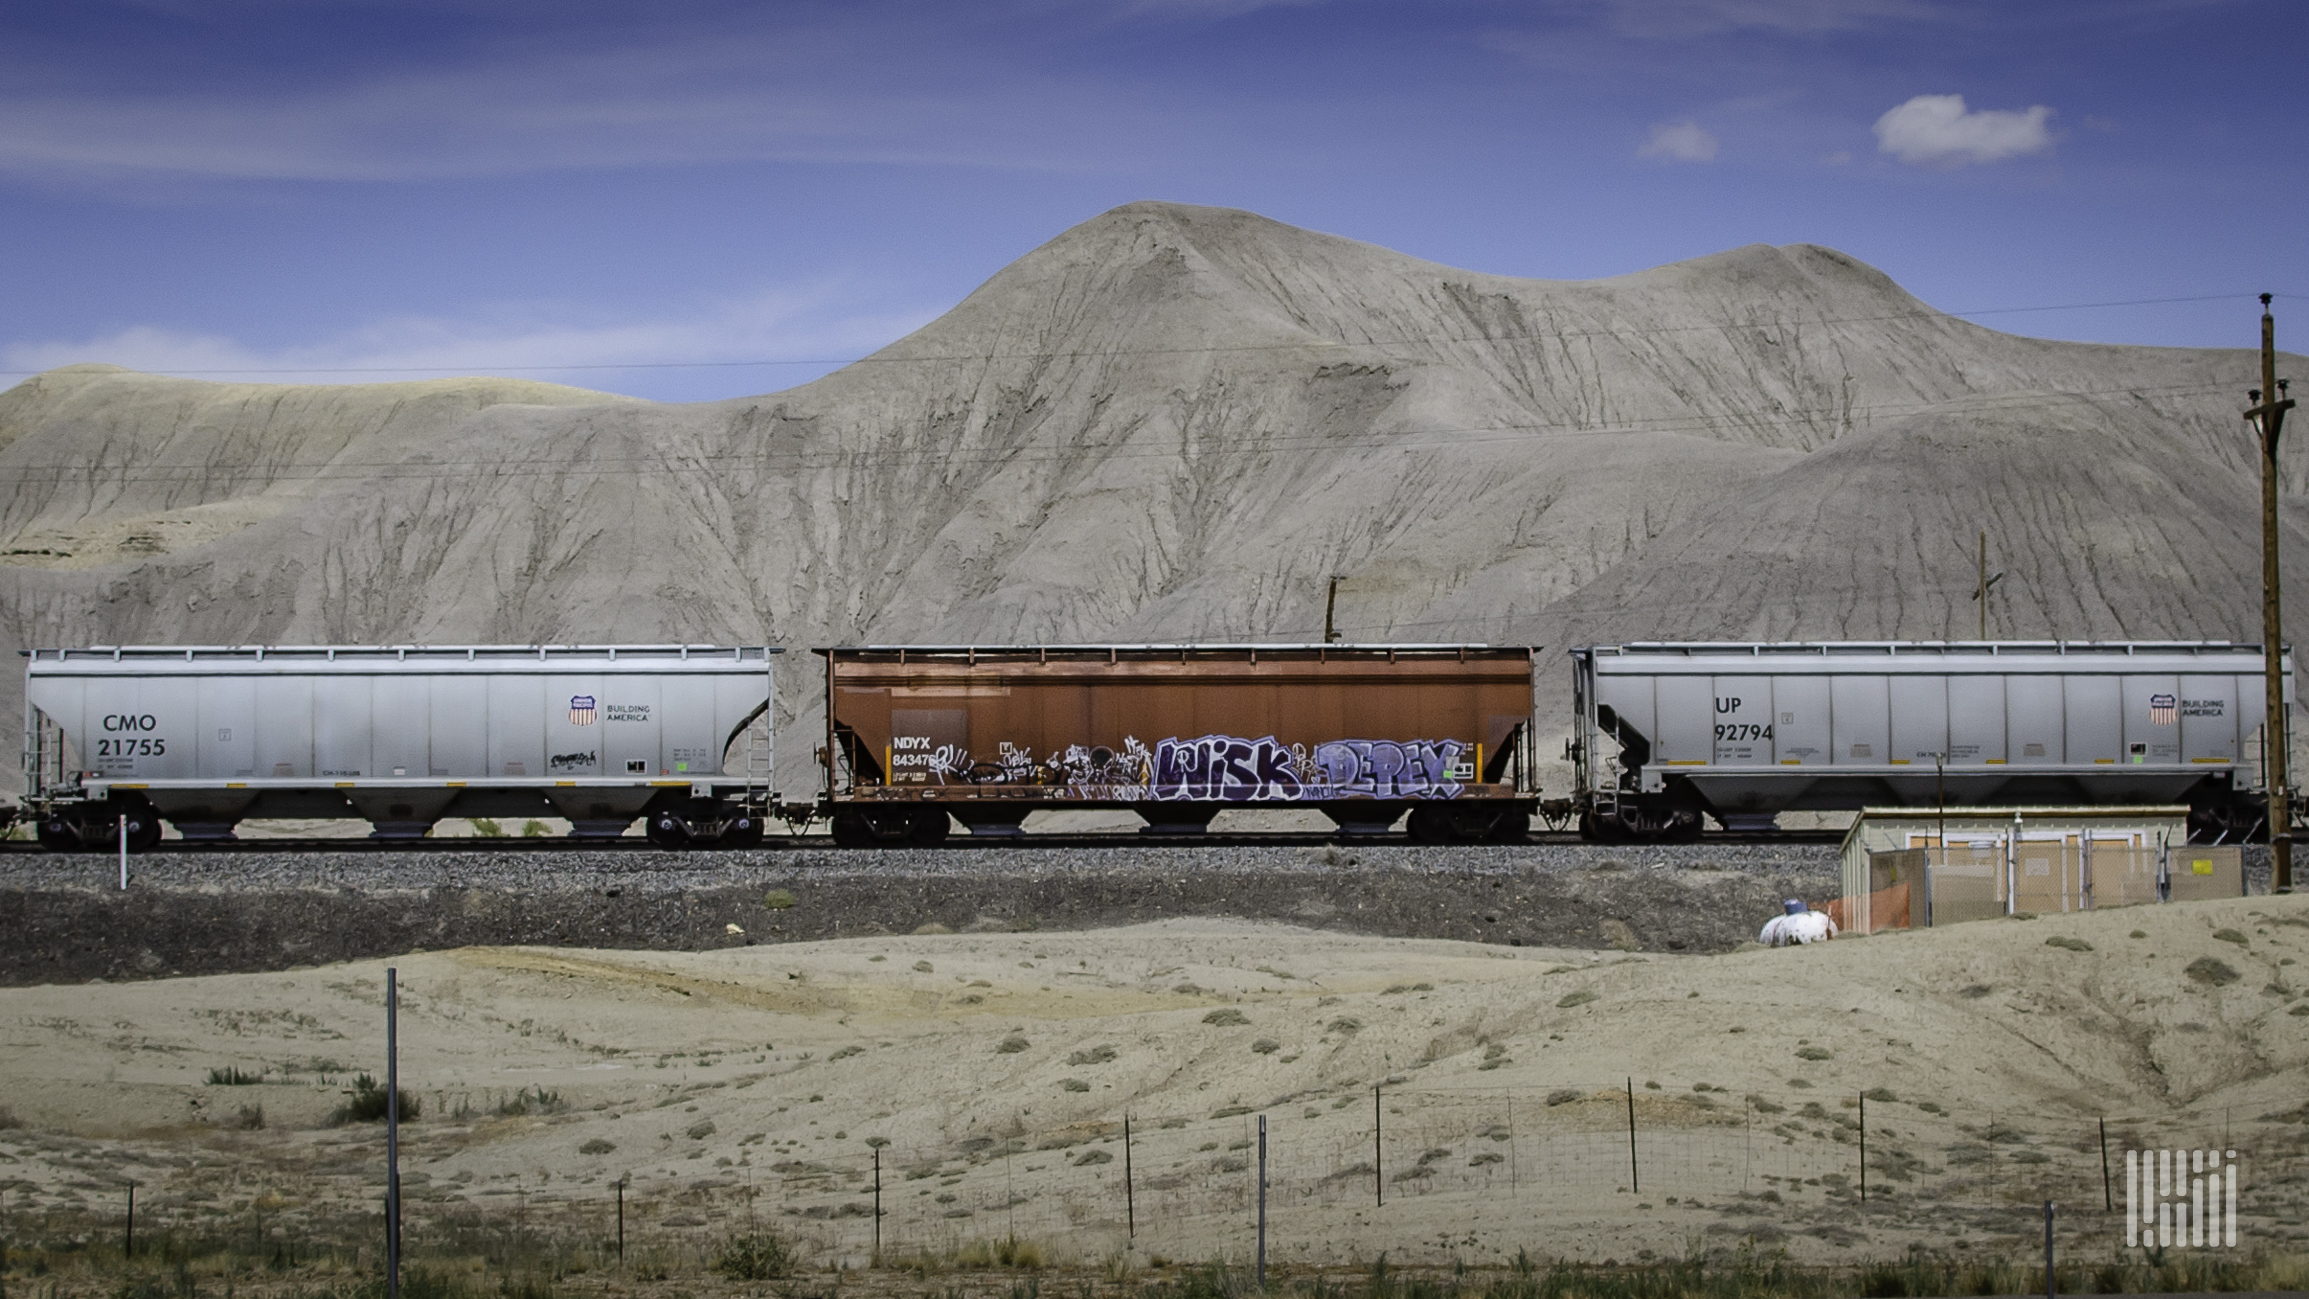 A train hauling hopper cars passes through a desert.